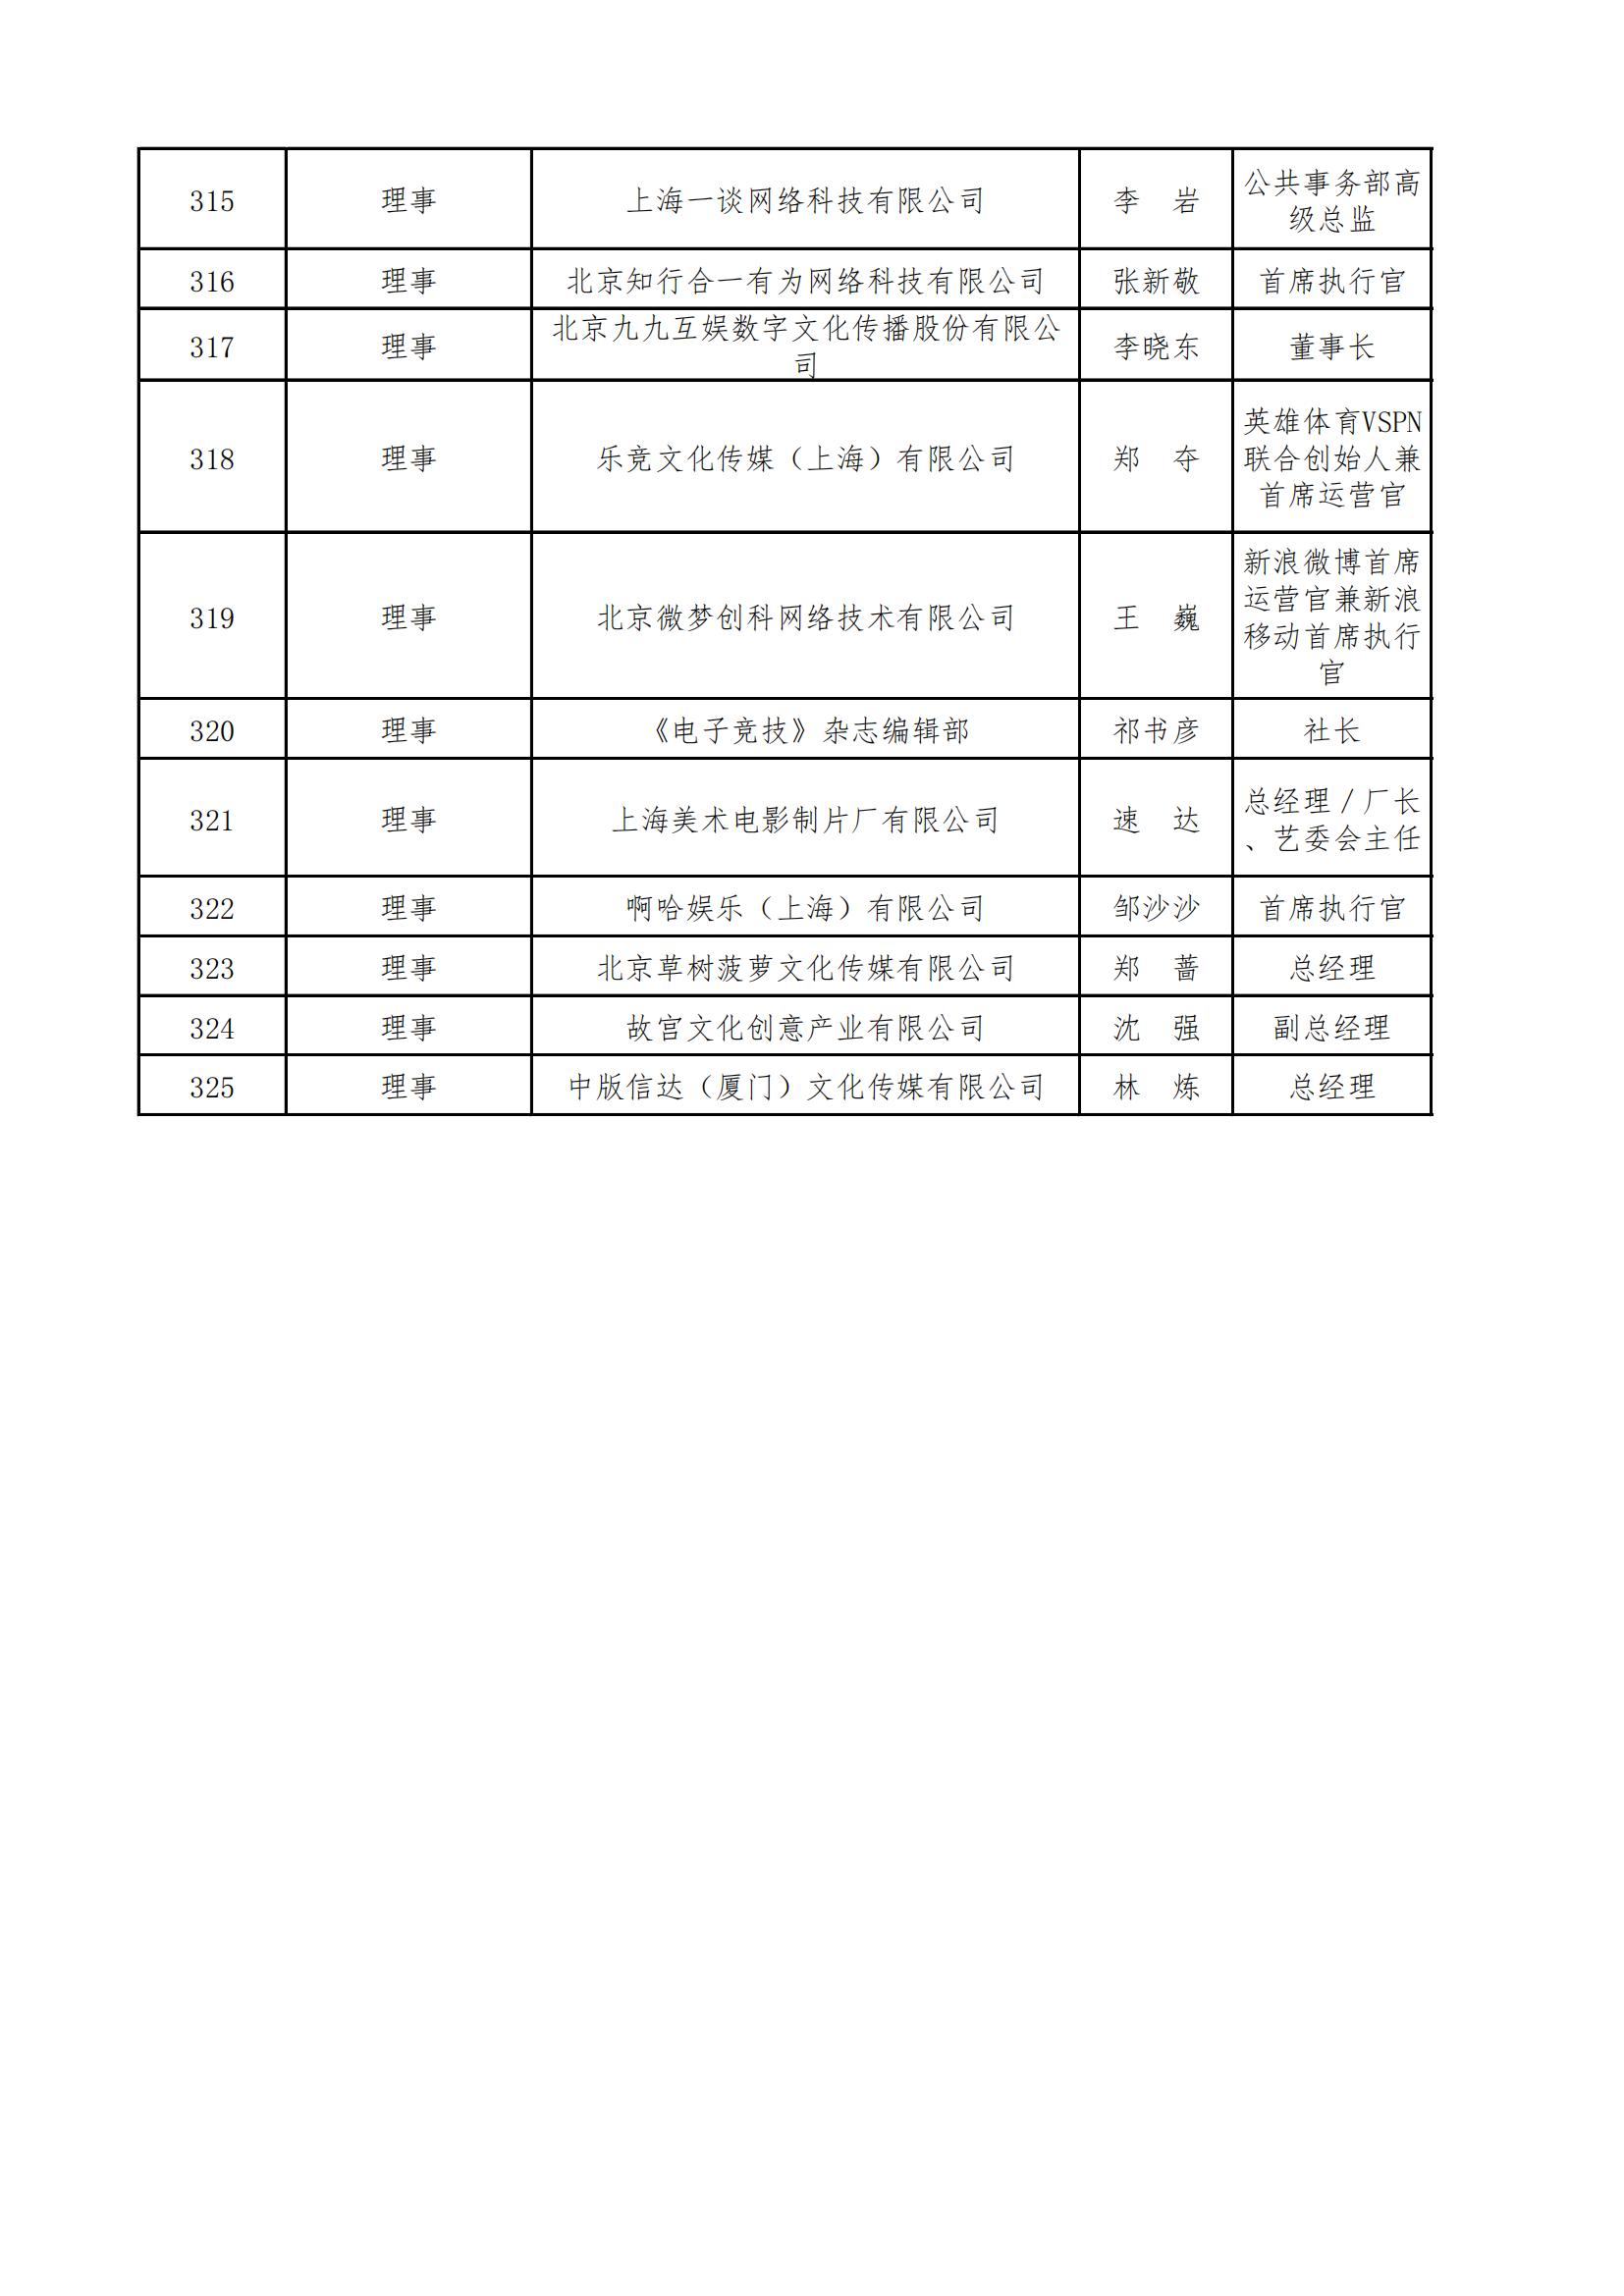 中國音像與數字出版協會第五屆理事會名錄_11.jpg